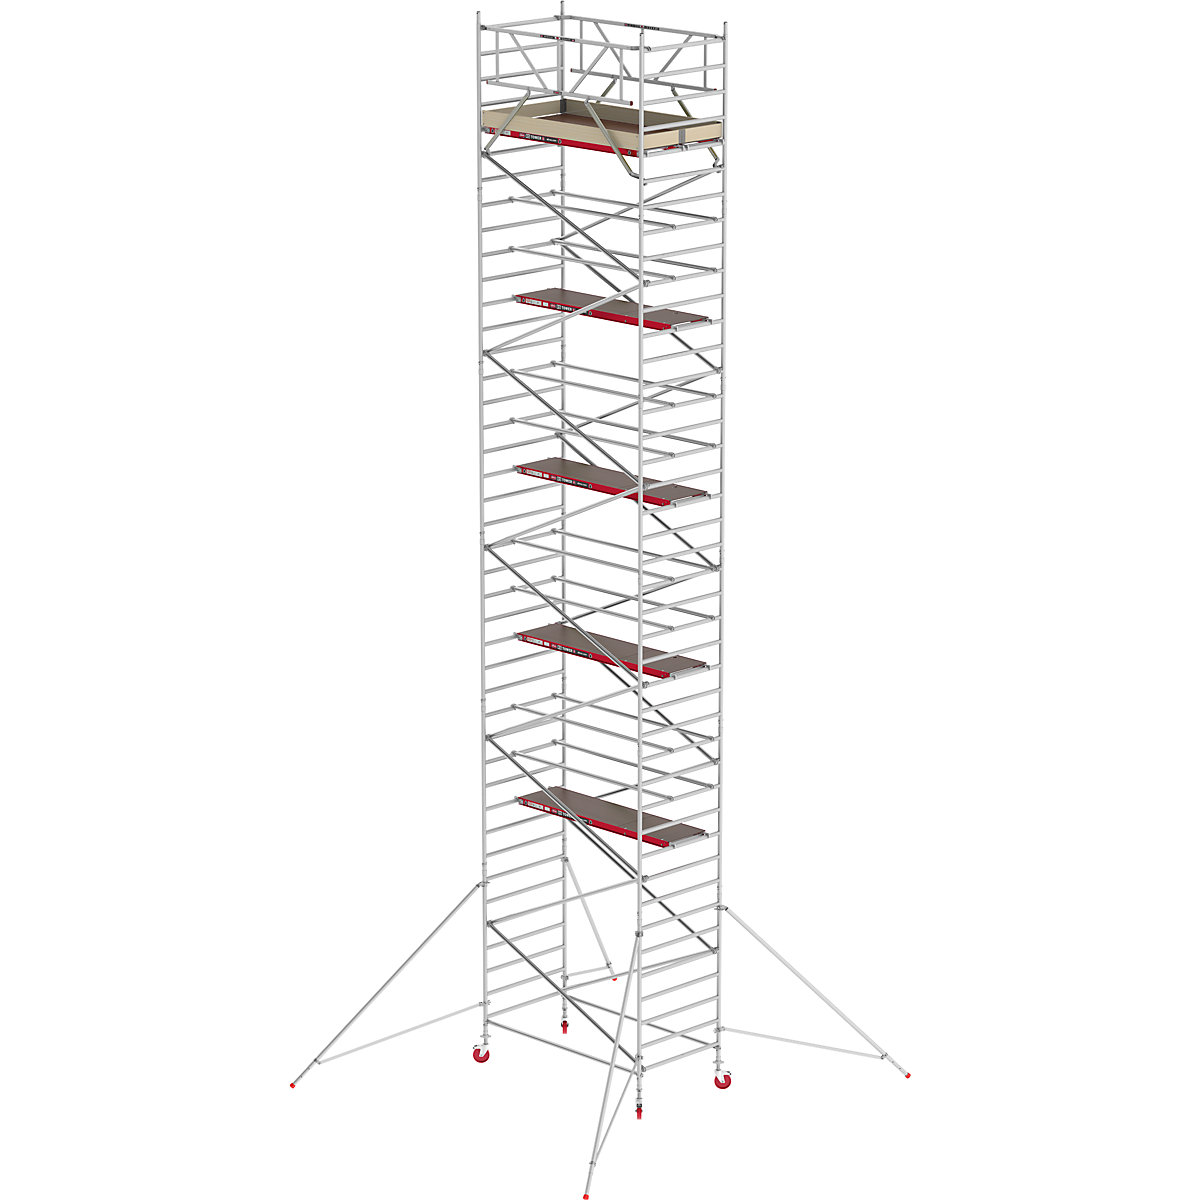 Schelă mobilă RS TOWER 42 lată – Altrex, platformă din lemn, lungime 2,45 m, înălțime de lucru 13,20 m-10